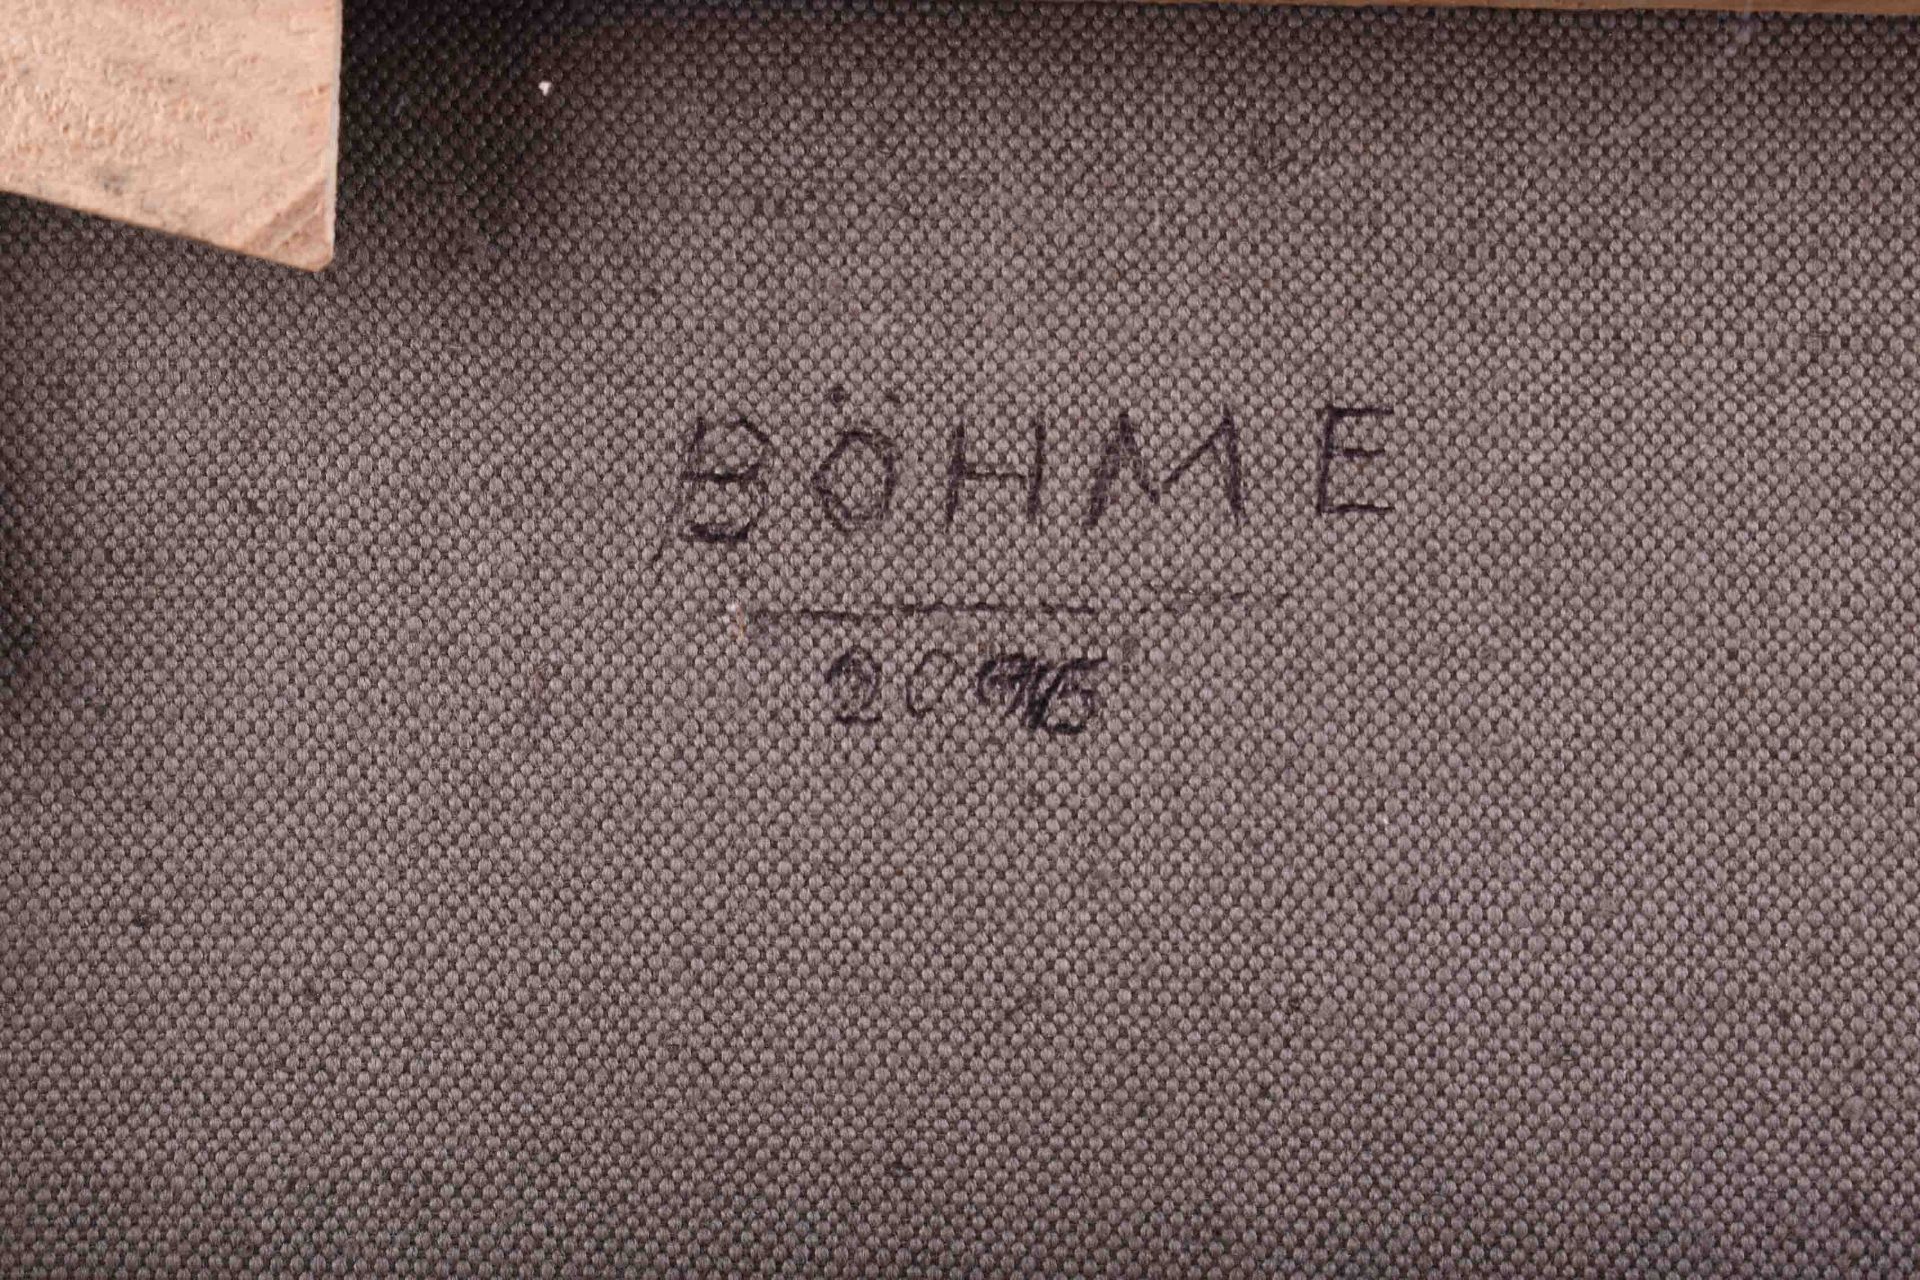 Lothar BÖHME (1938) - Image 5 of 6